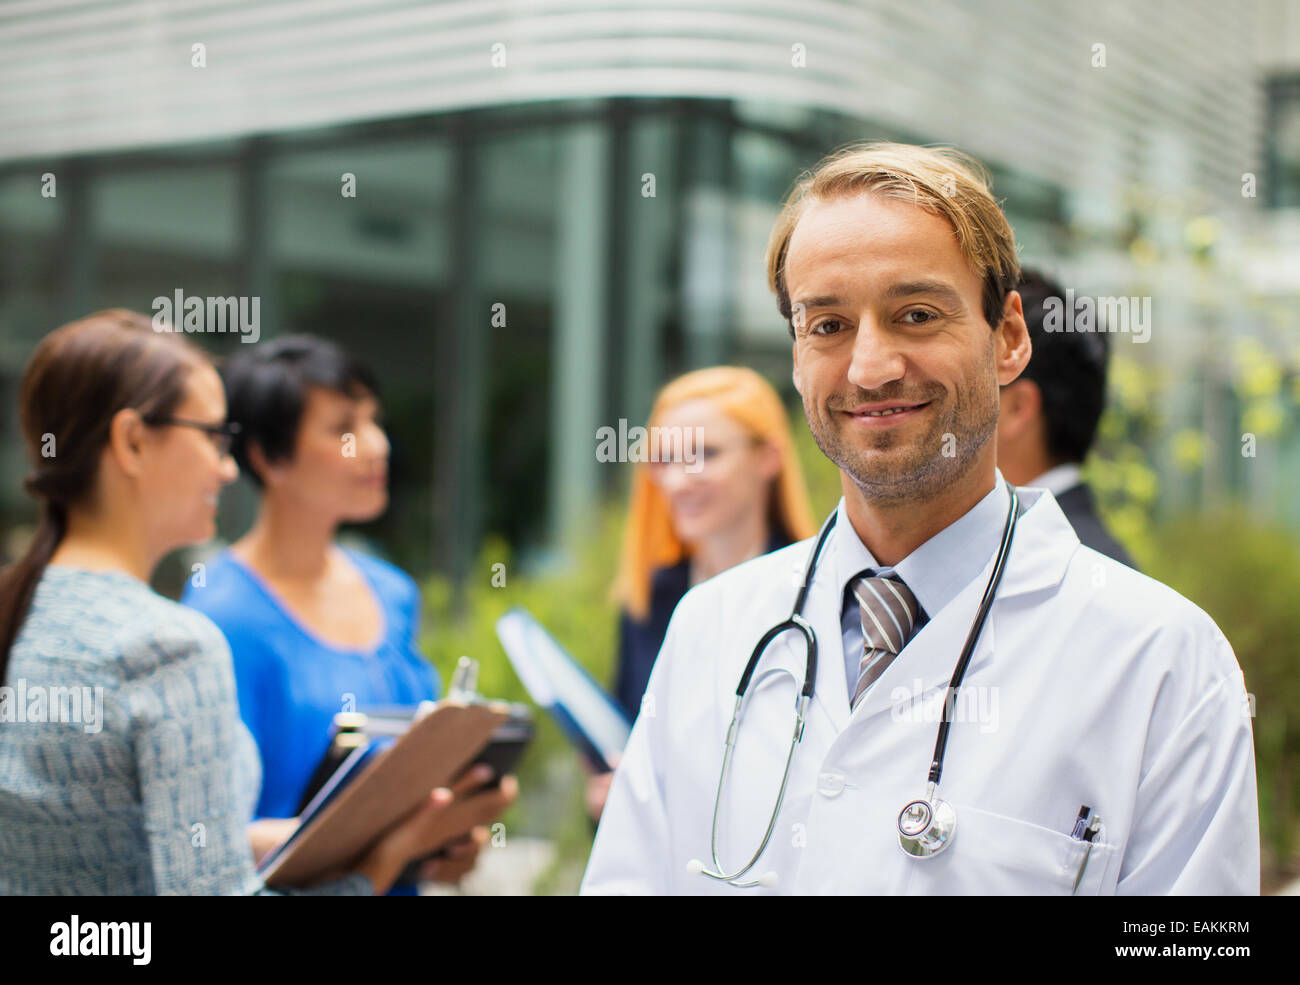 Porträt von lächelnden Arzt tragen Laborkittel vor Krankenhaus, Frauen mit Ablagen im Hintergrund stehend Stockfoto